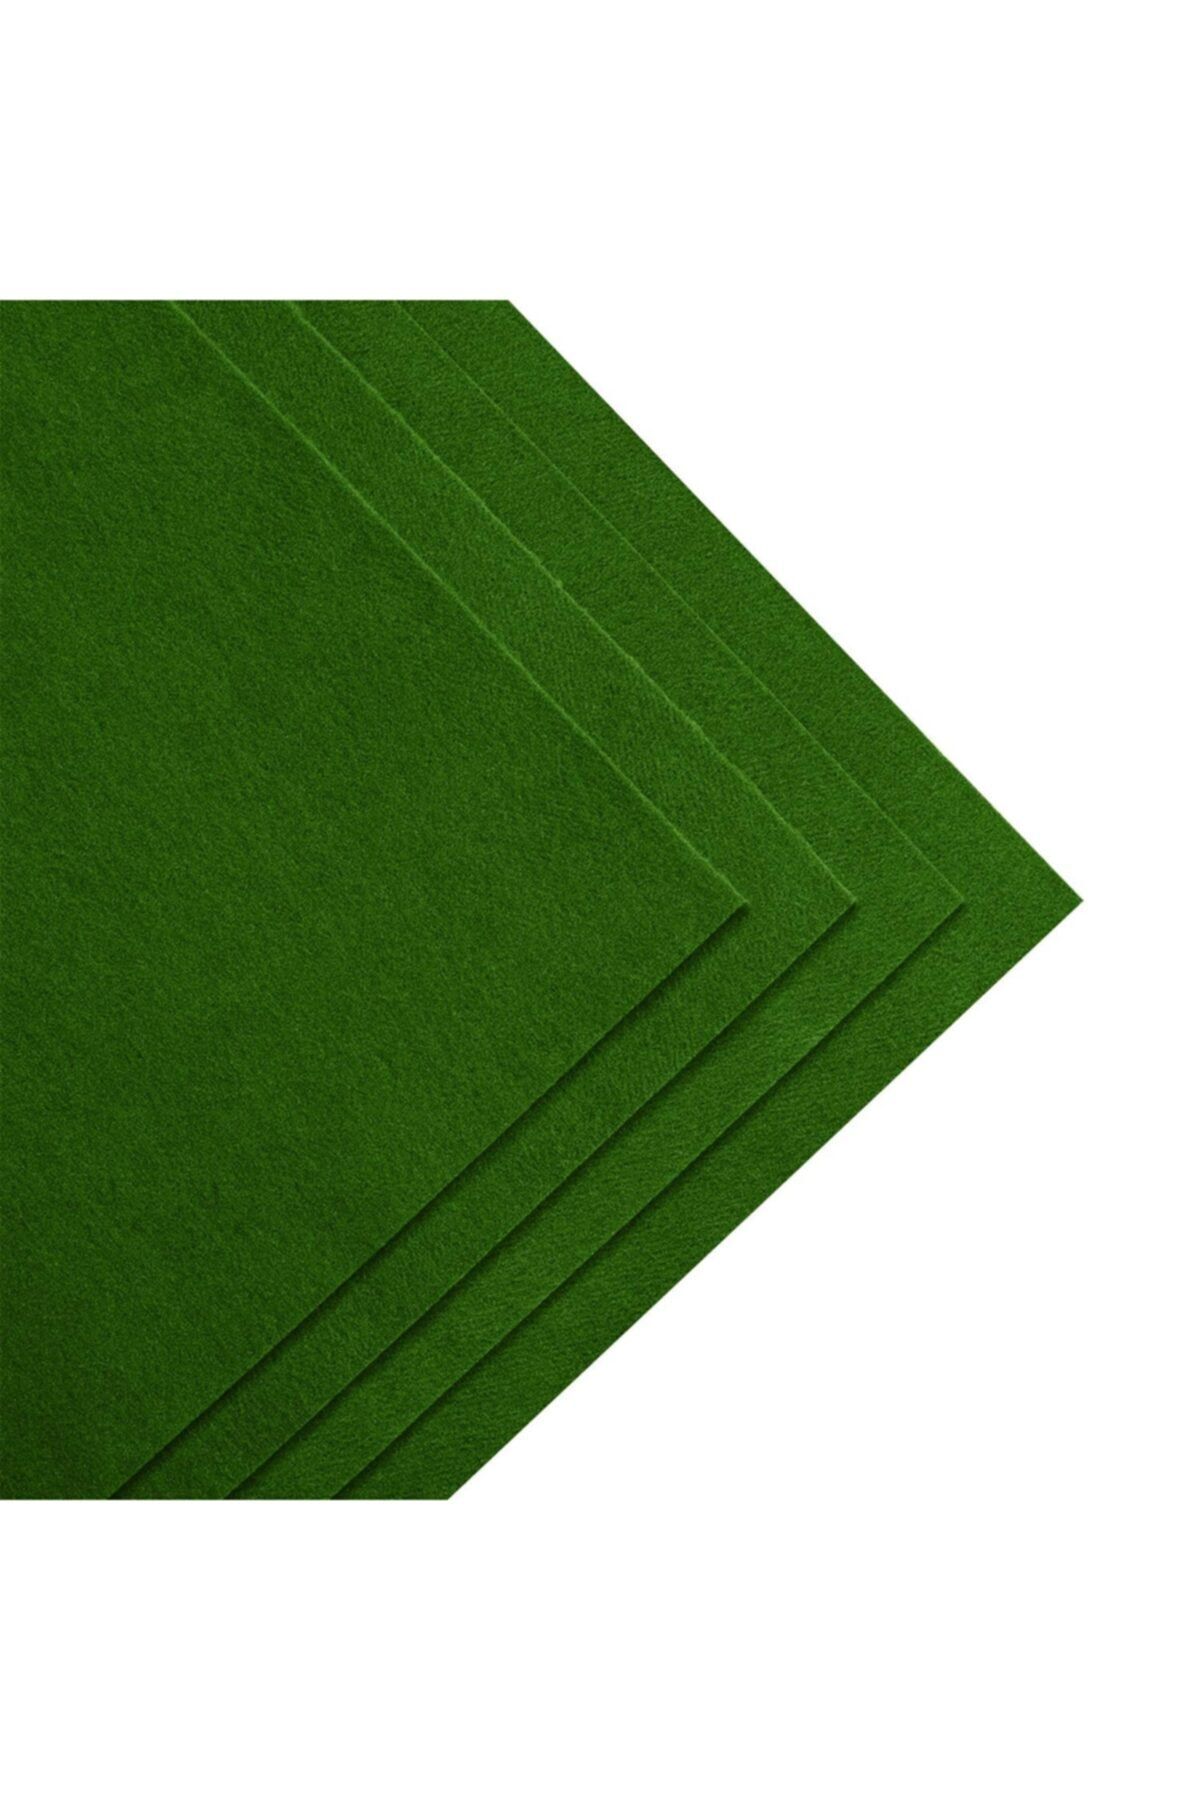 Salteks Kalın Keçe 3mm 1mx1m Çimen Yeşili Renk